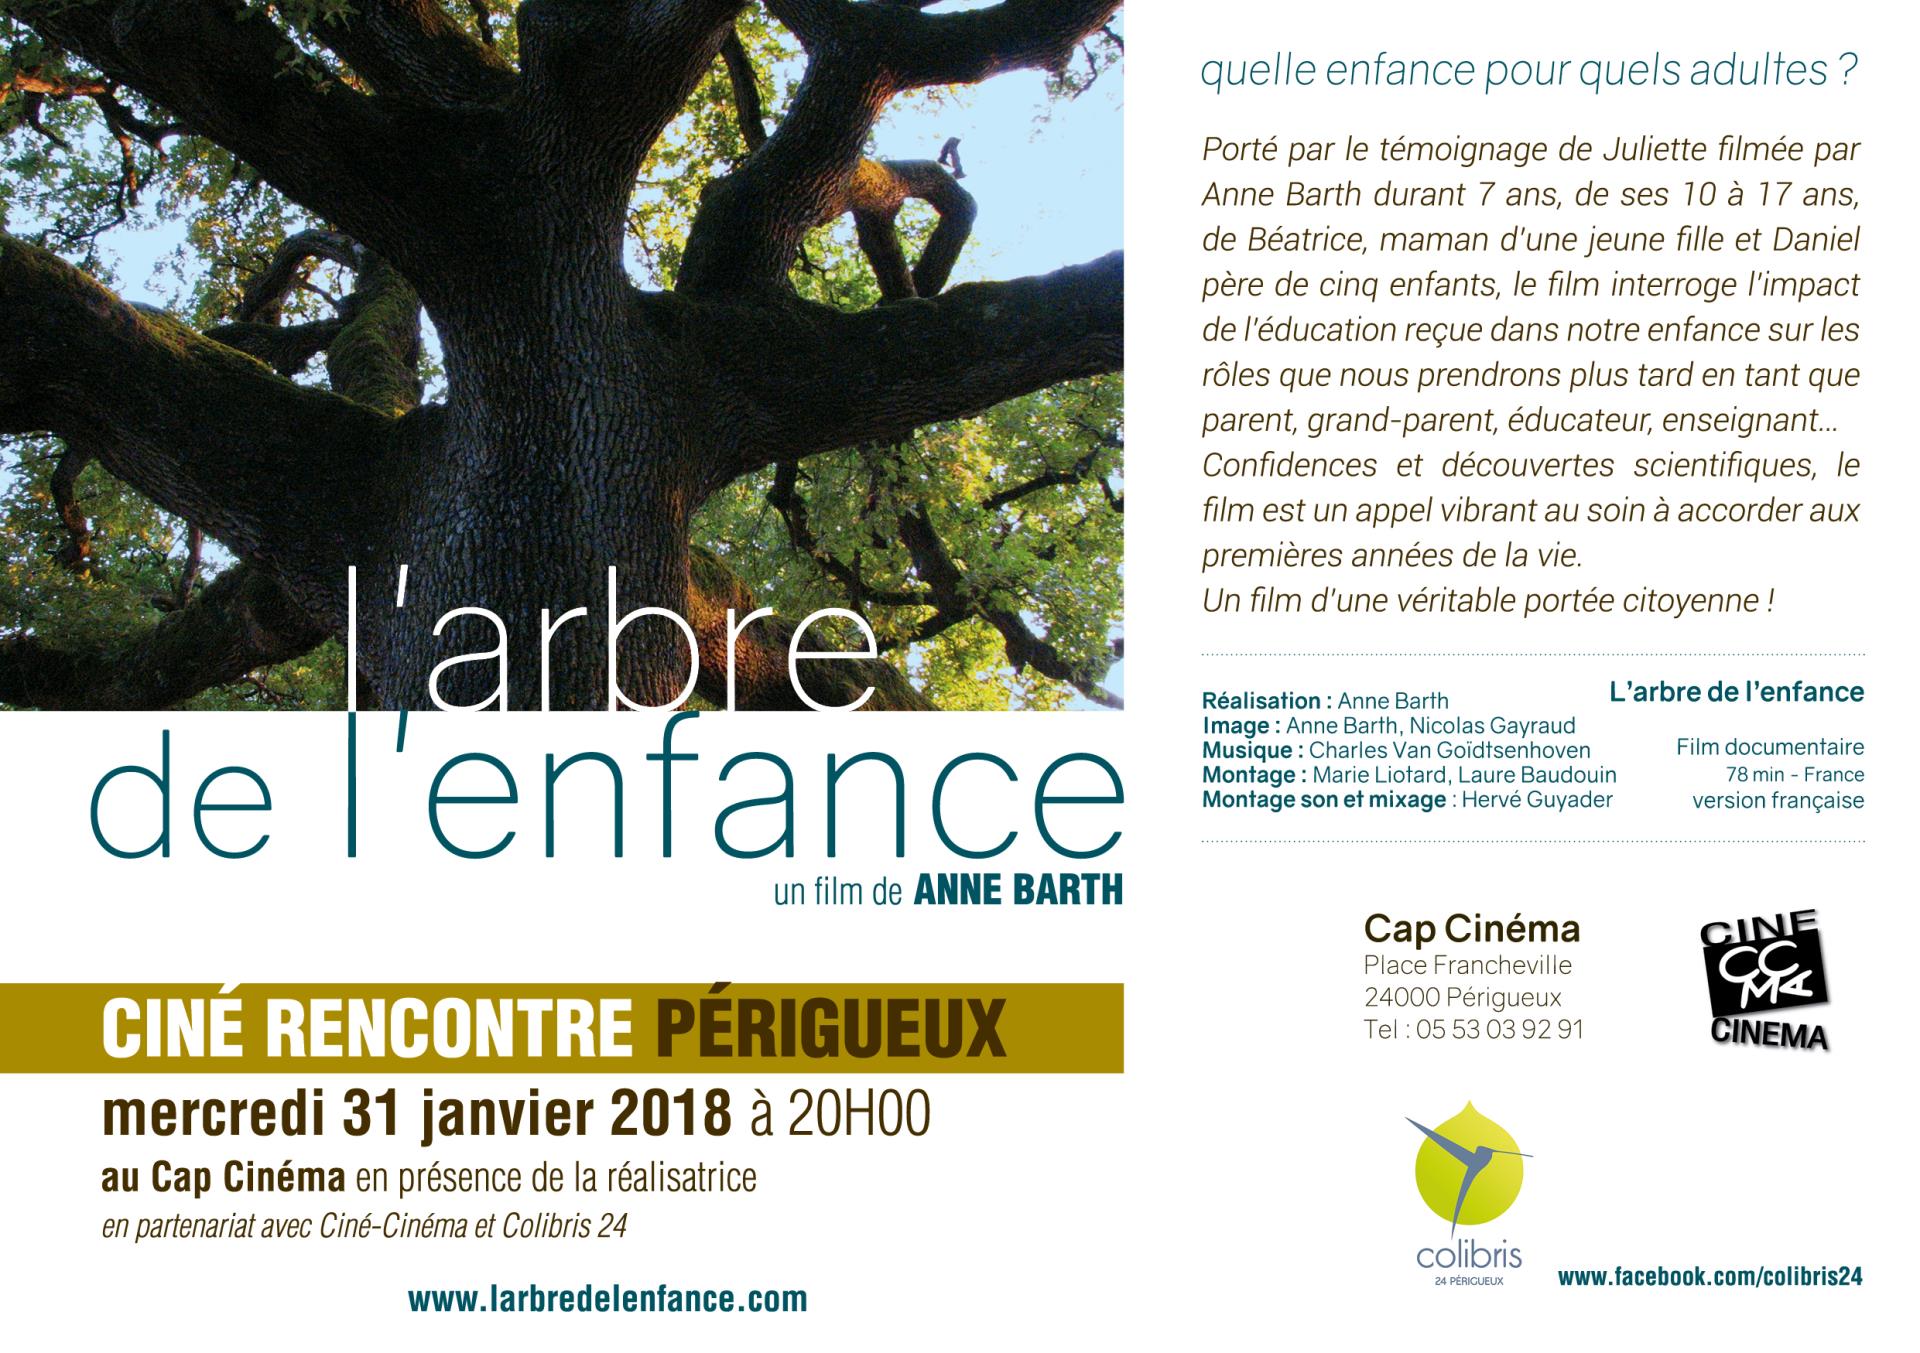 Projection "L'arbre de l'enfance" mercredi 31 janvier à 20H00 au CGR Périgueux